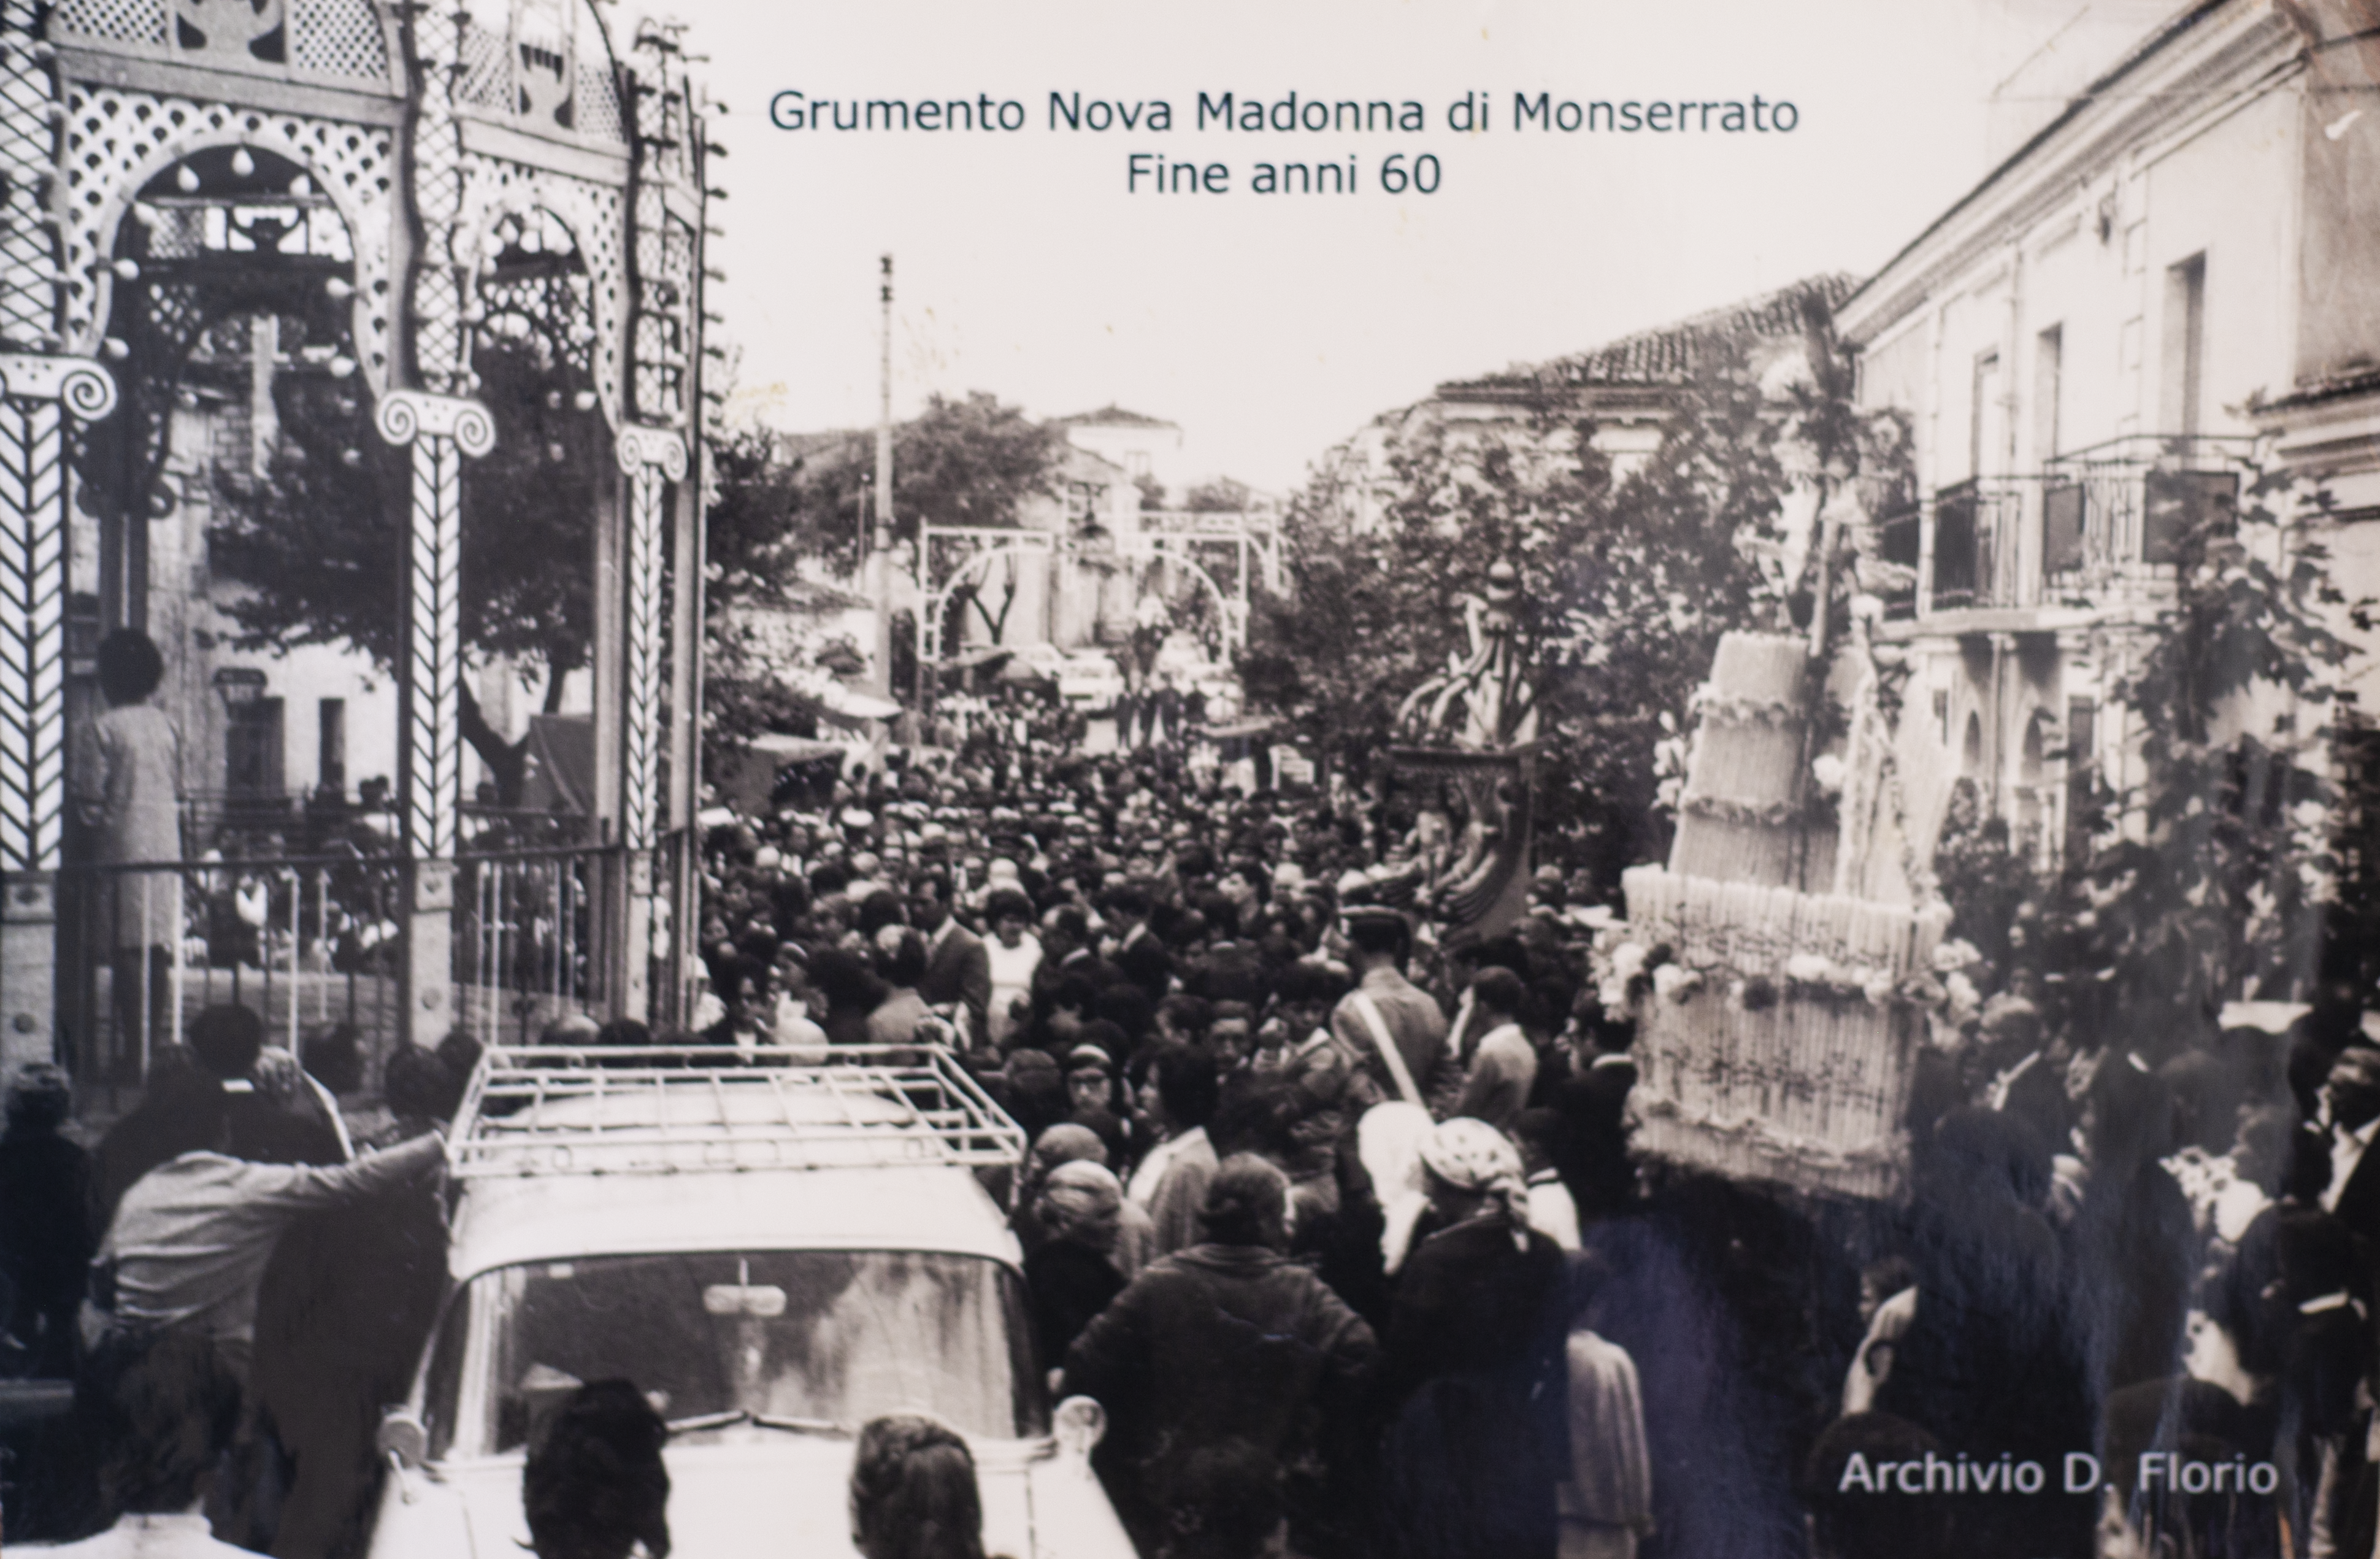 Festa della Madonna di Monserrato alla fine degli anni '60